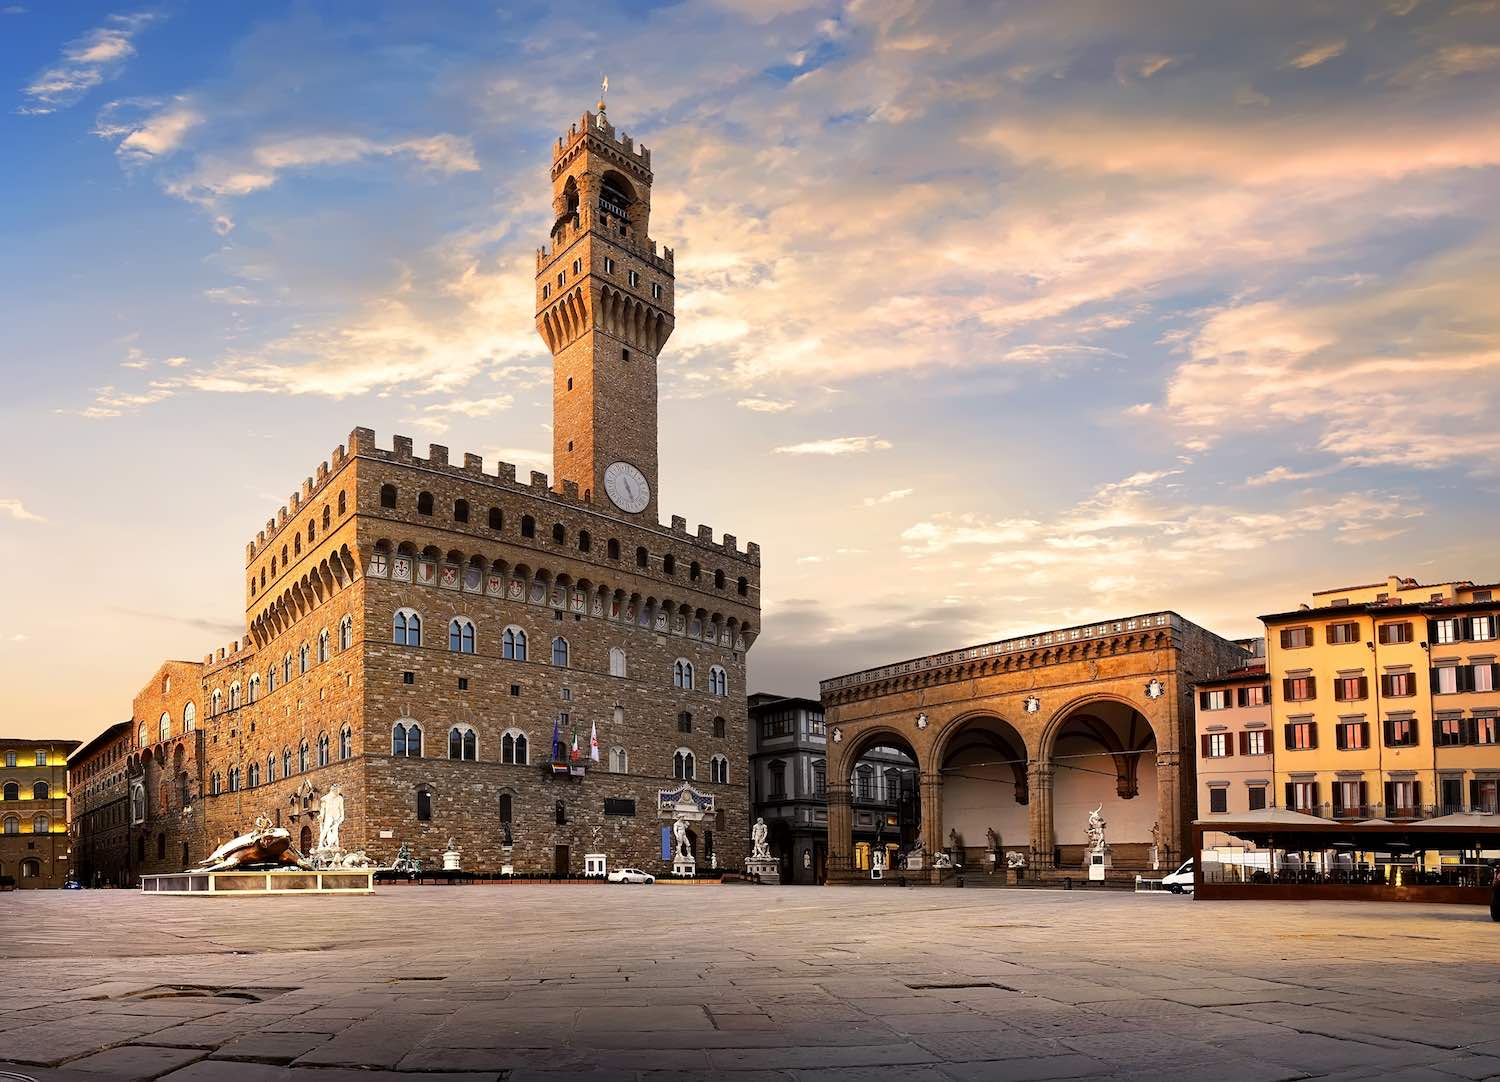 Piazza della Signoria è uno dei luoghi simbolo di Firenze. In assoluto una delle piazze più conosciute al mondo, che racchiude tesori inestimabili.